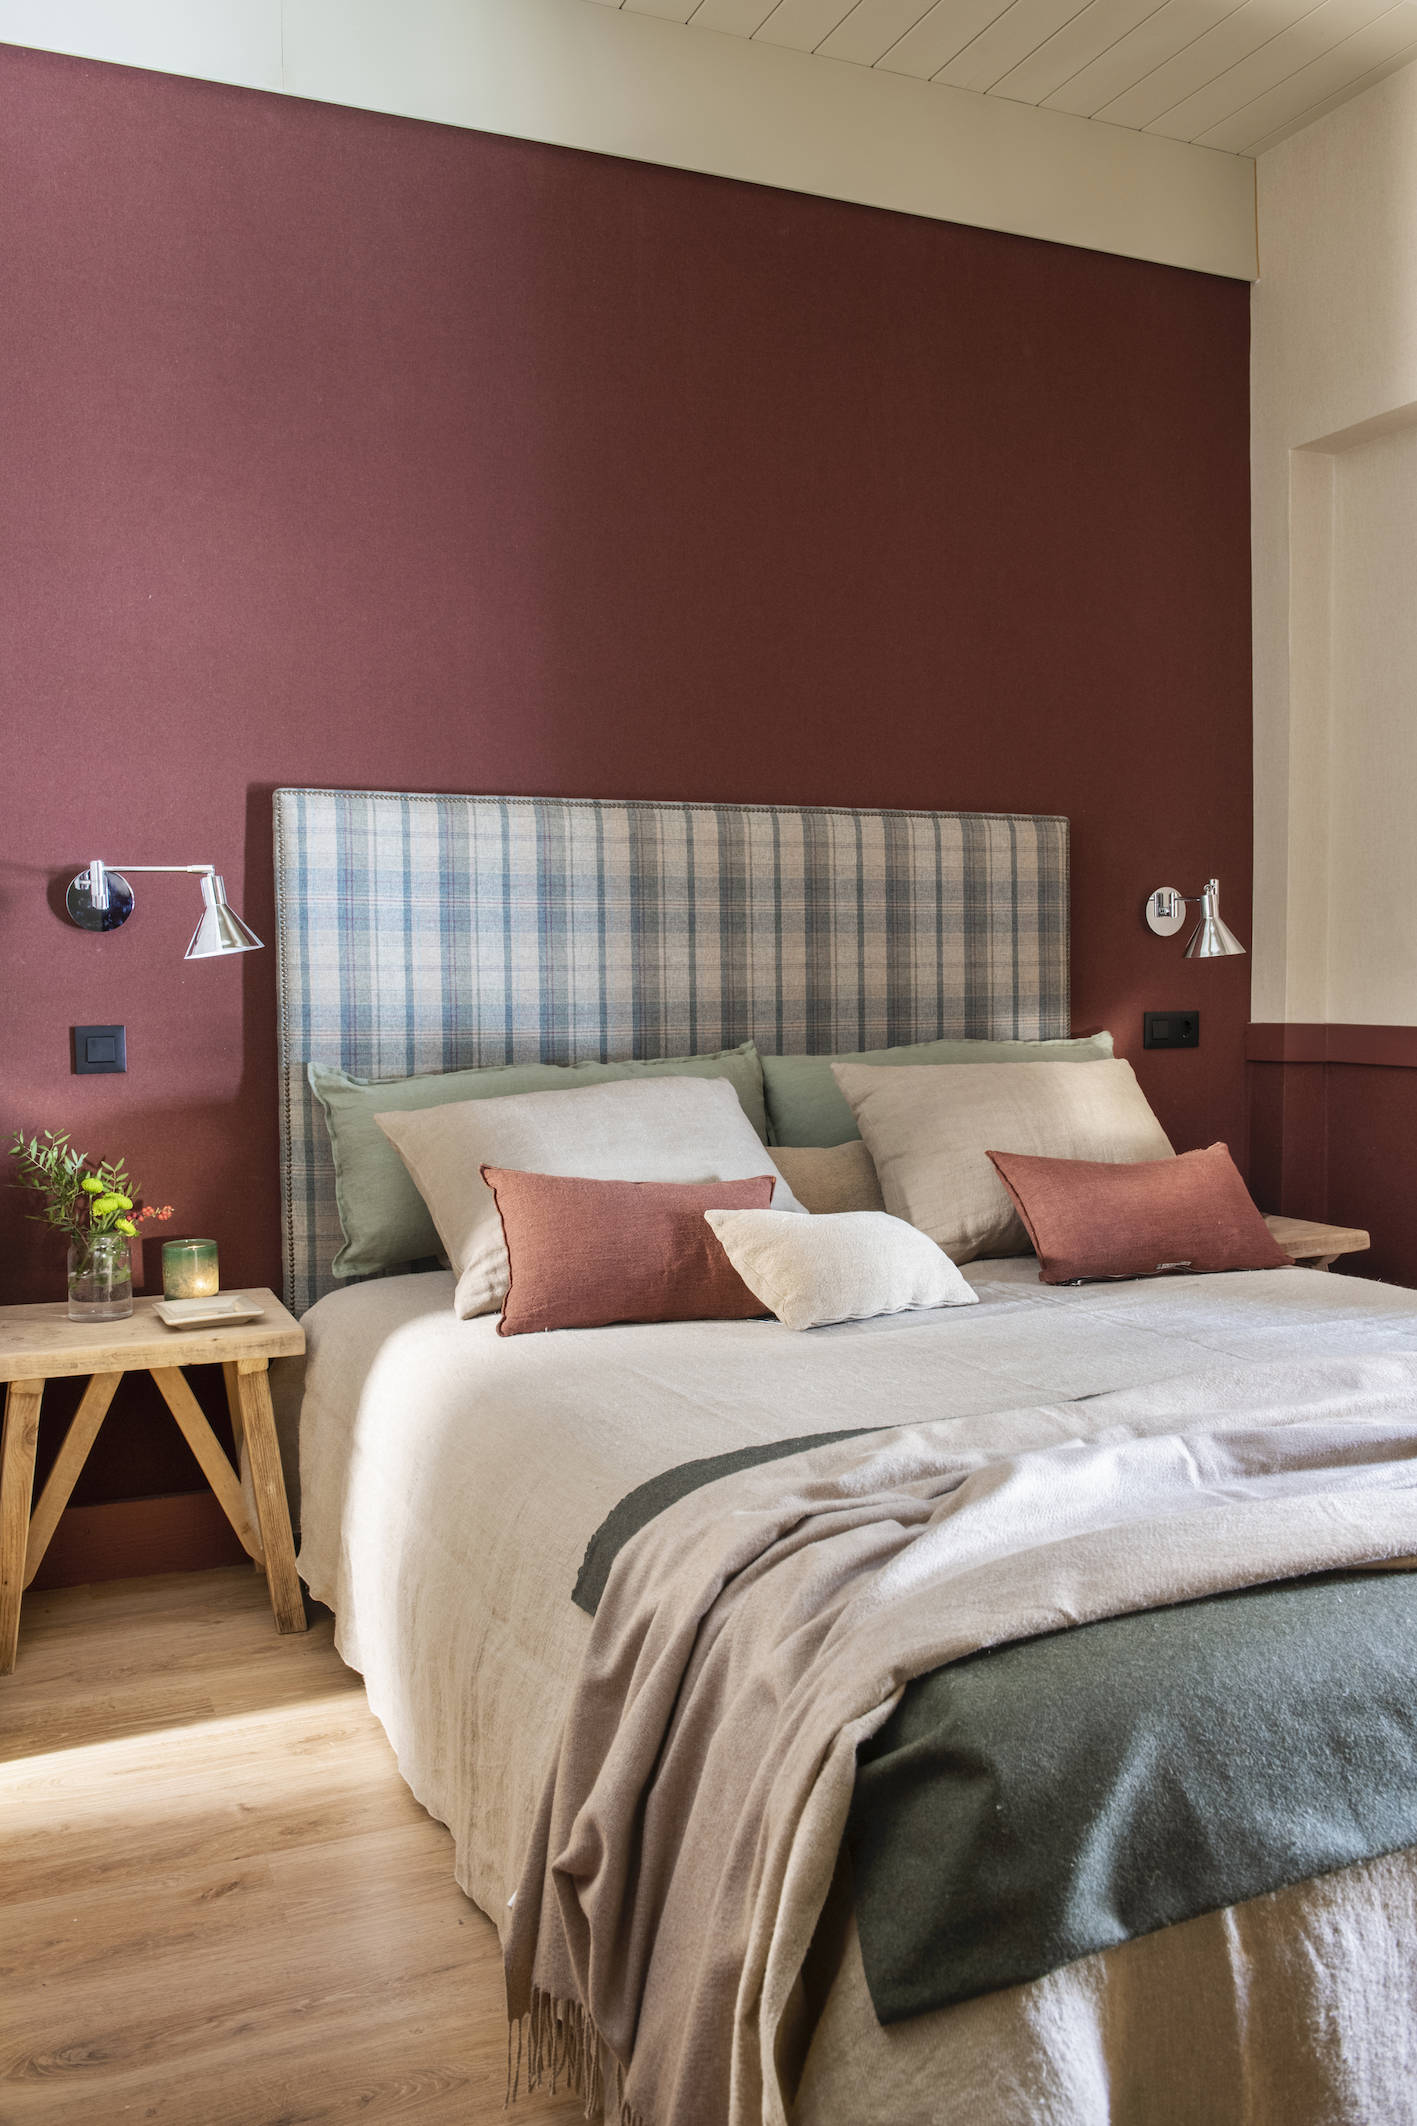 Dormitorio con papel pintado en color granate, cabecero tapizado a cuadros.